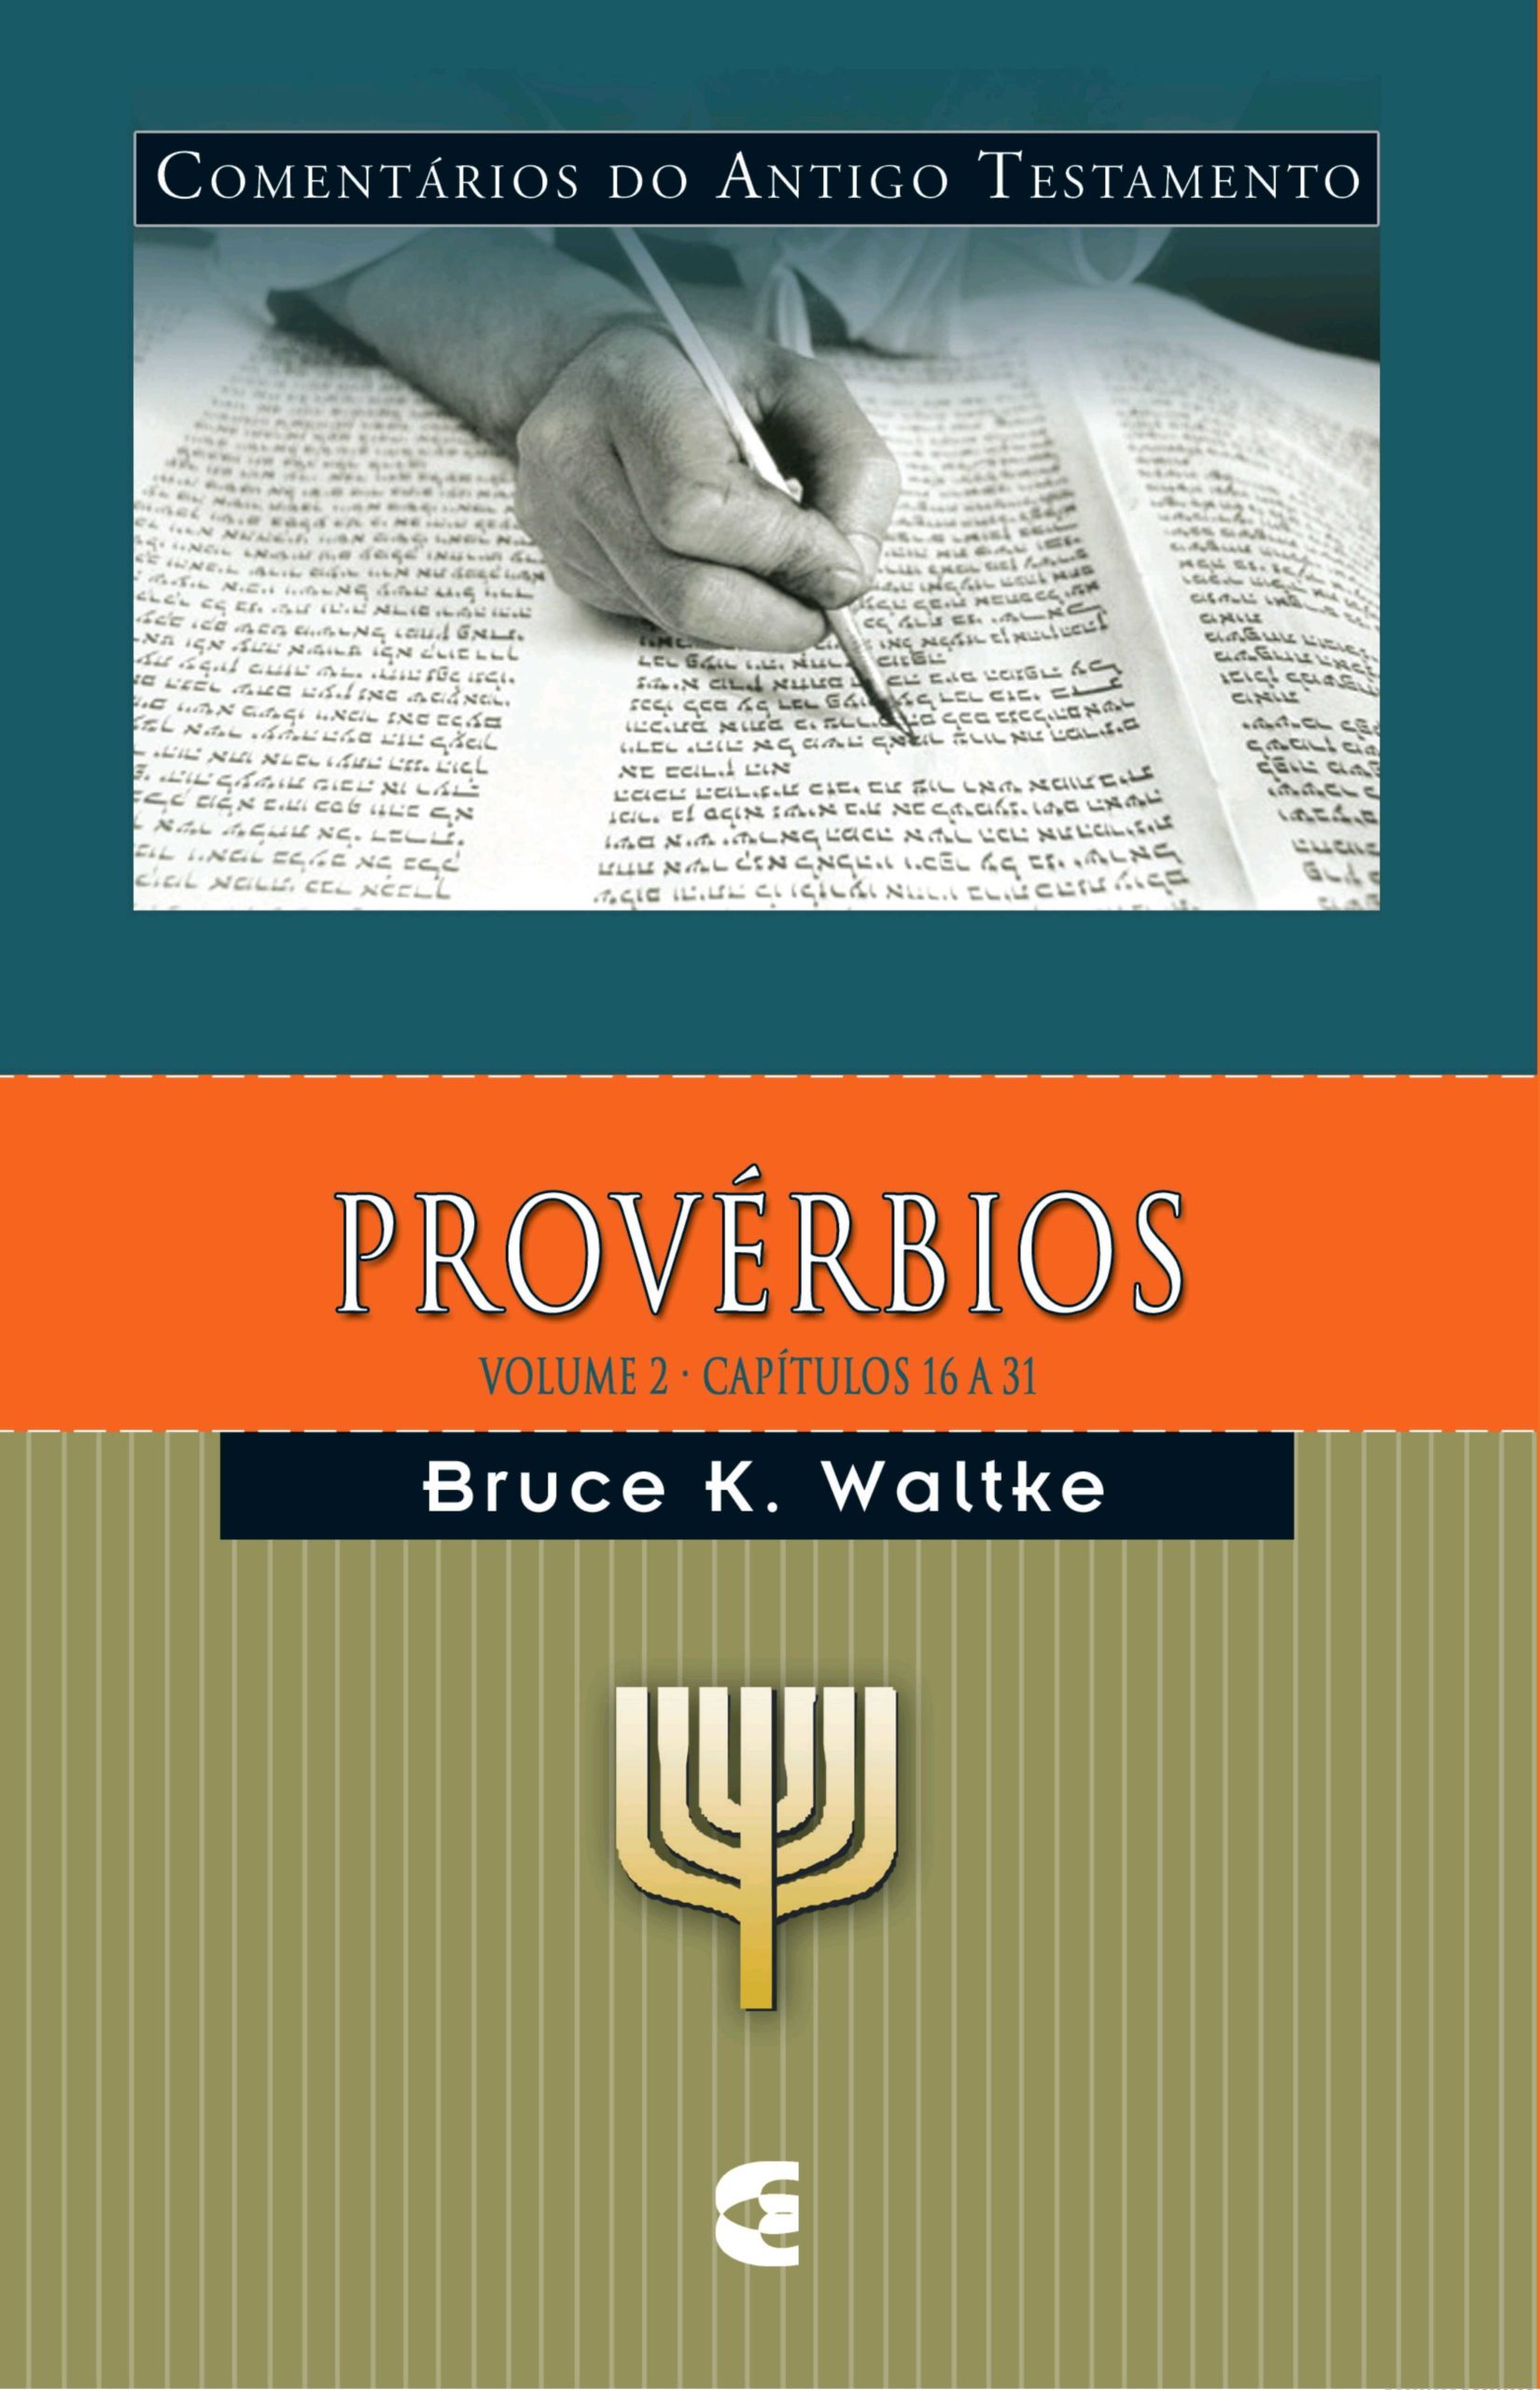 Comentário Do Antigo Testamento – Provérbios Volume 2